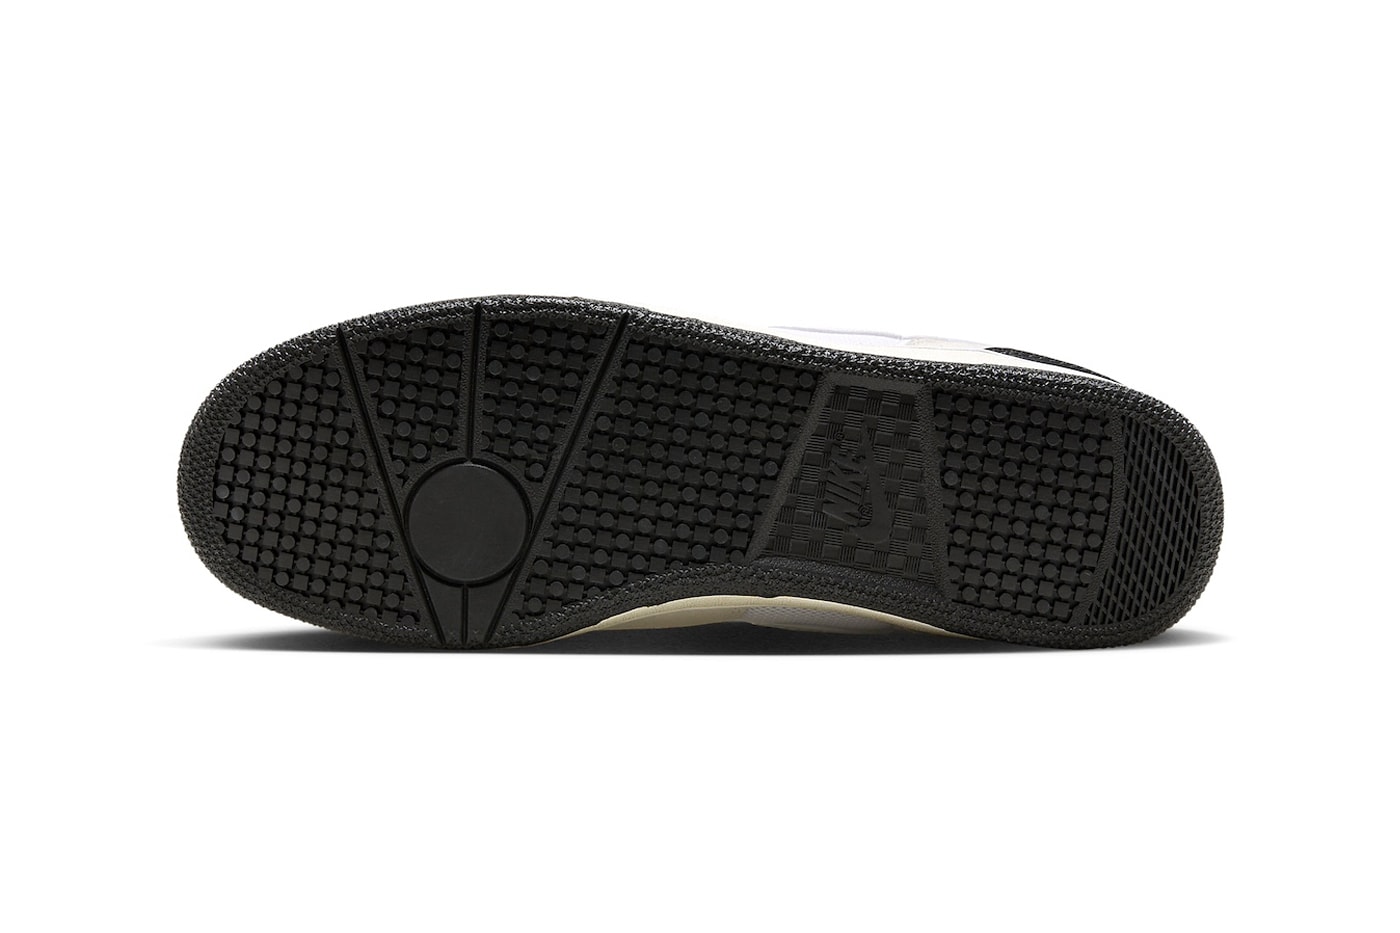 ソーシャル・ステイタスがナイキとの最新コラボアタック“サミットホワイト”を発売 Social Status x Nike Mac Attack "Summer White" Has an Official Release Date DZ4636-100 James Whitaker Group travis scott swoosh tennis shoe